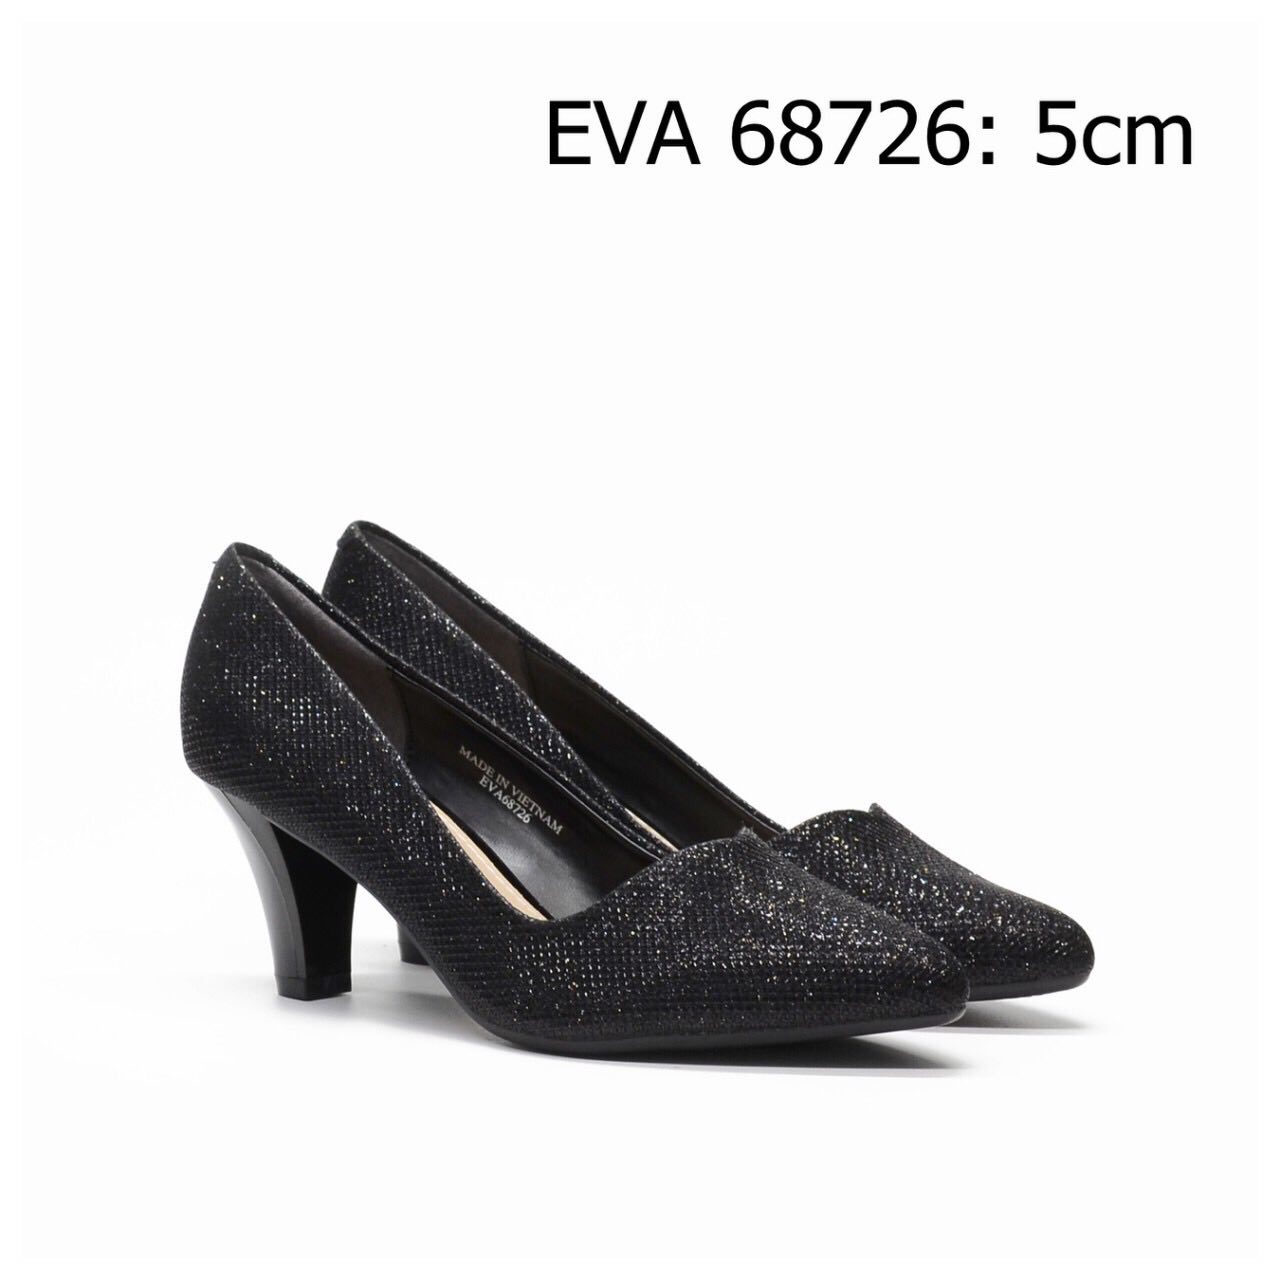 Giày công sở EVA68672 cao 5cm, thiết kế trẻ trung, nữ tính